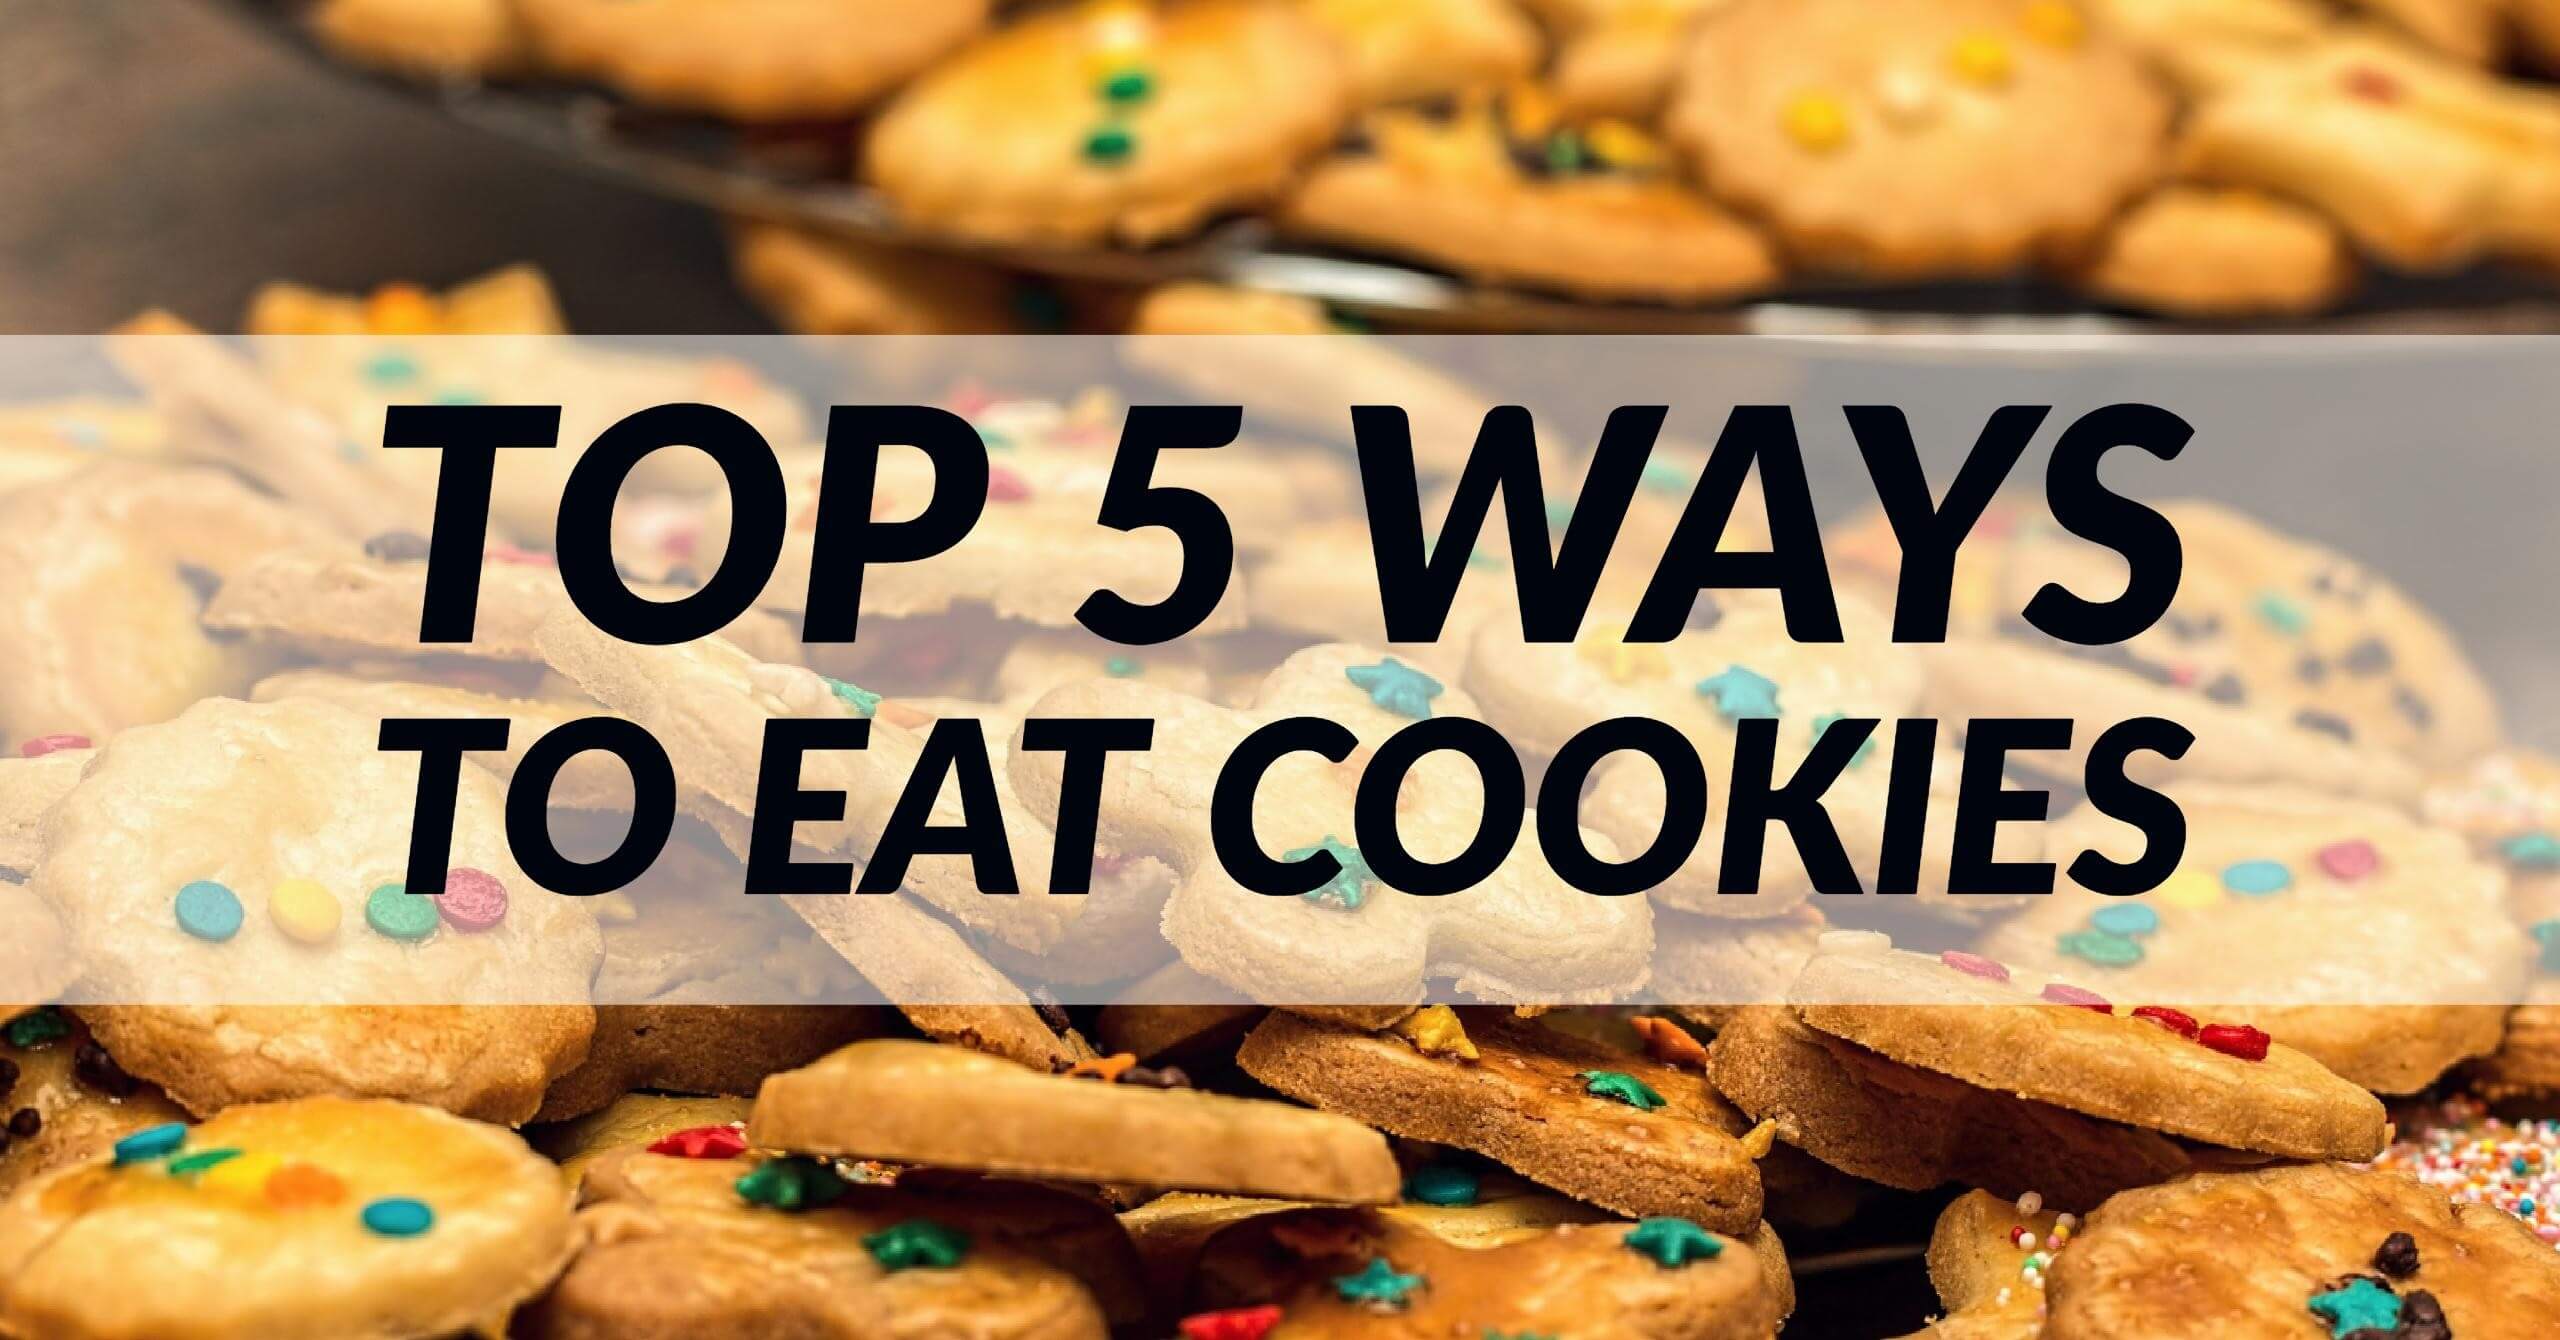 Top 5 Ways to Eat Cookies